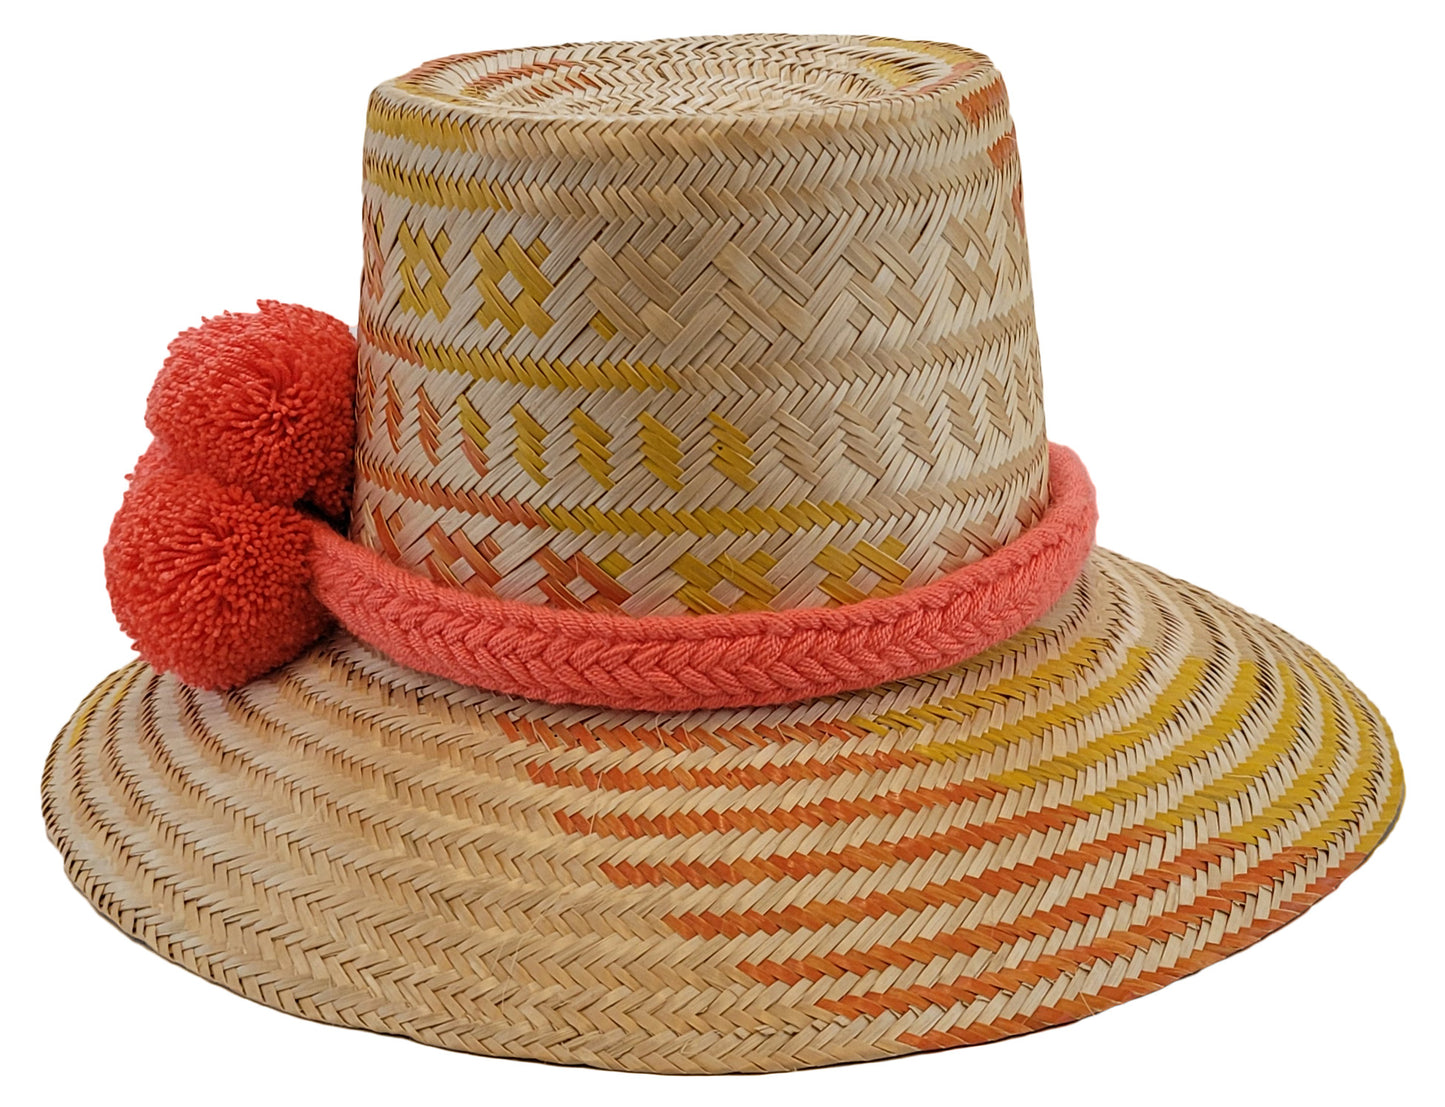 josephine handmade wayuu hat side view